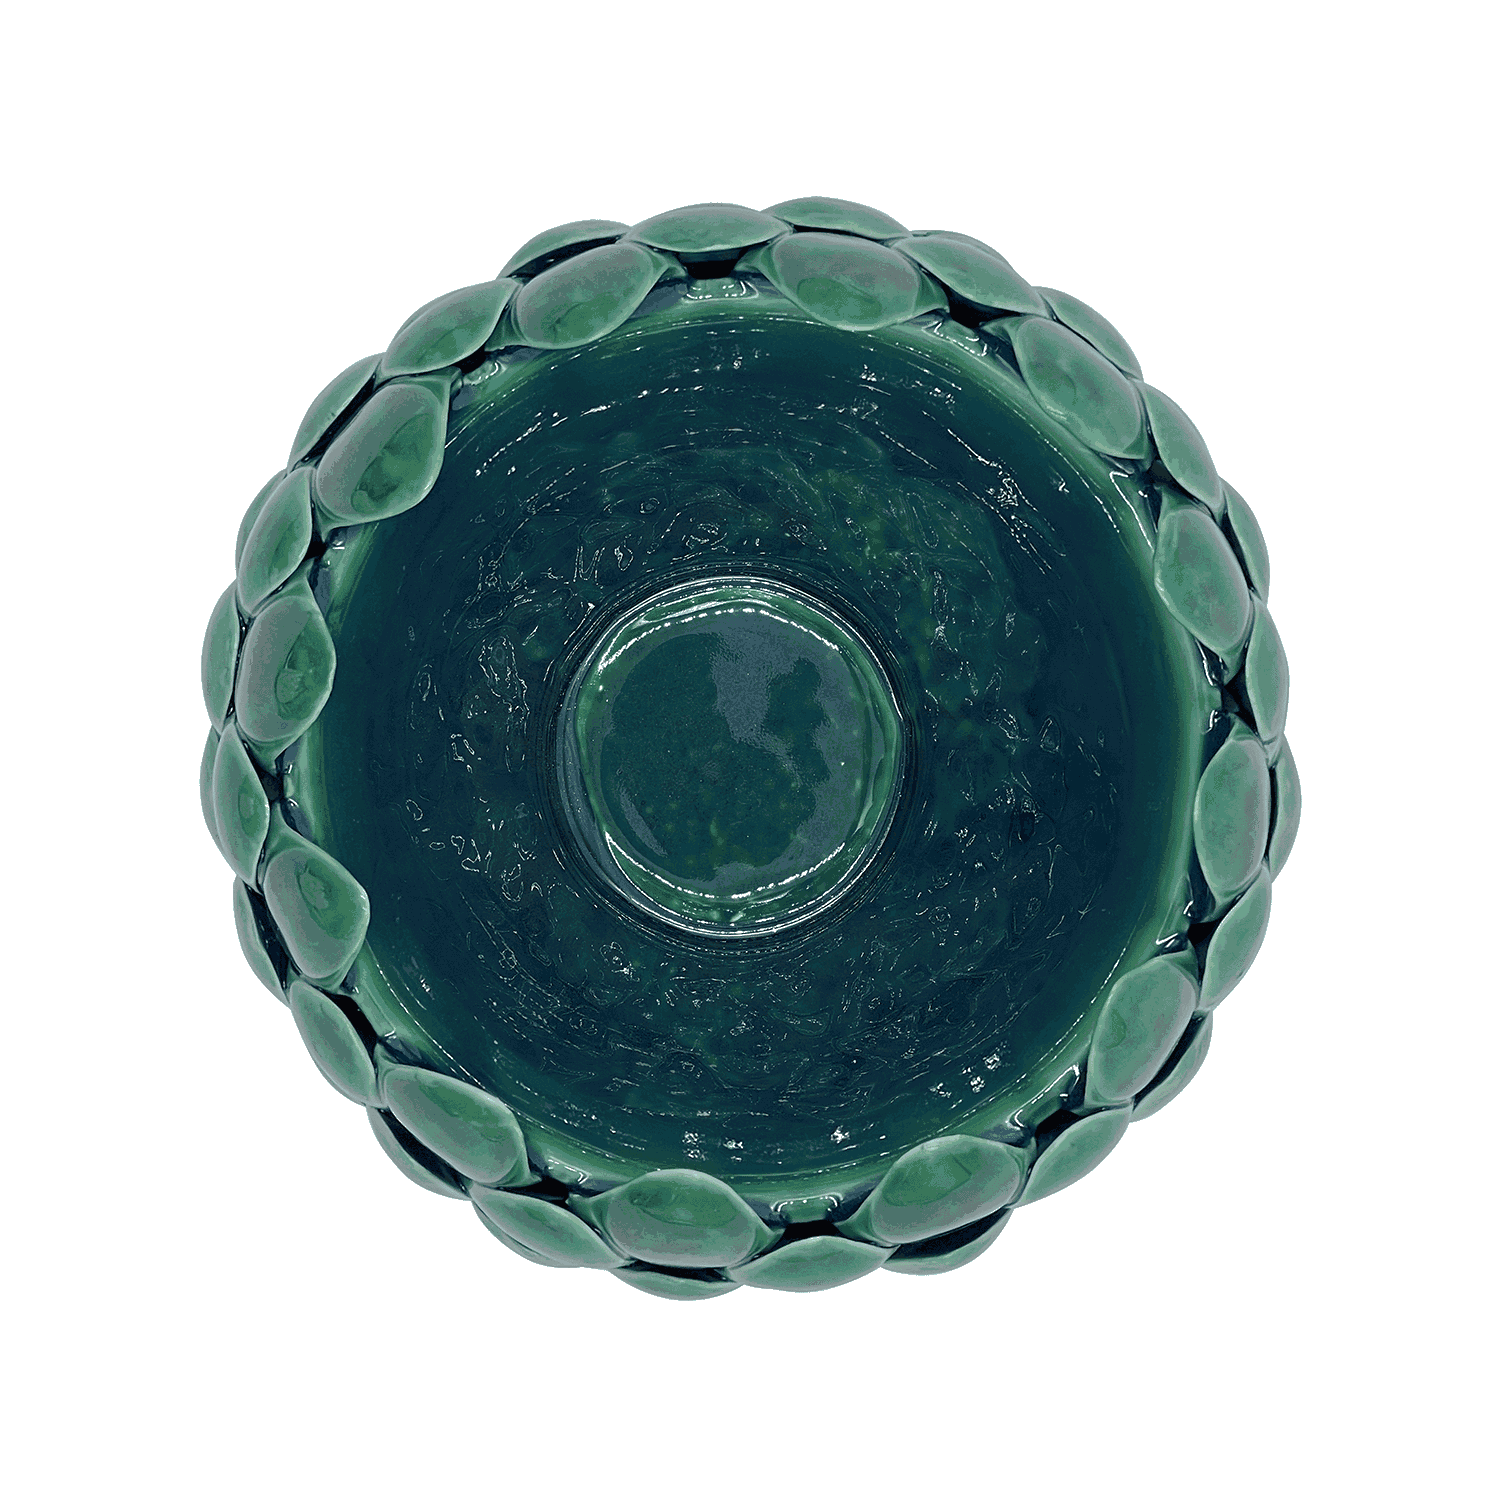 Medium Green Artichoke Bowl